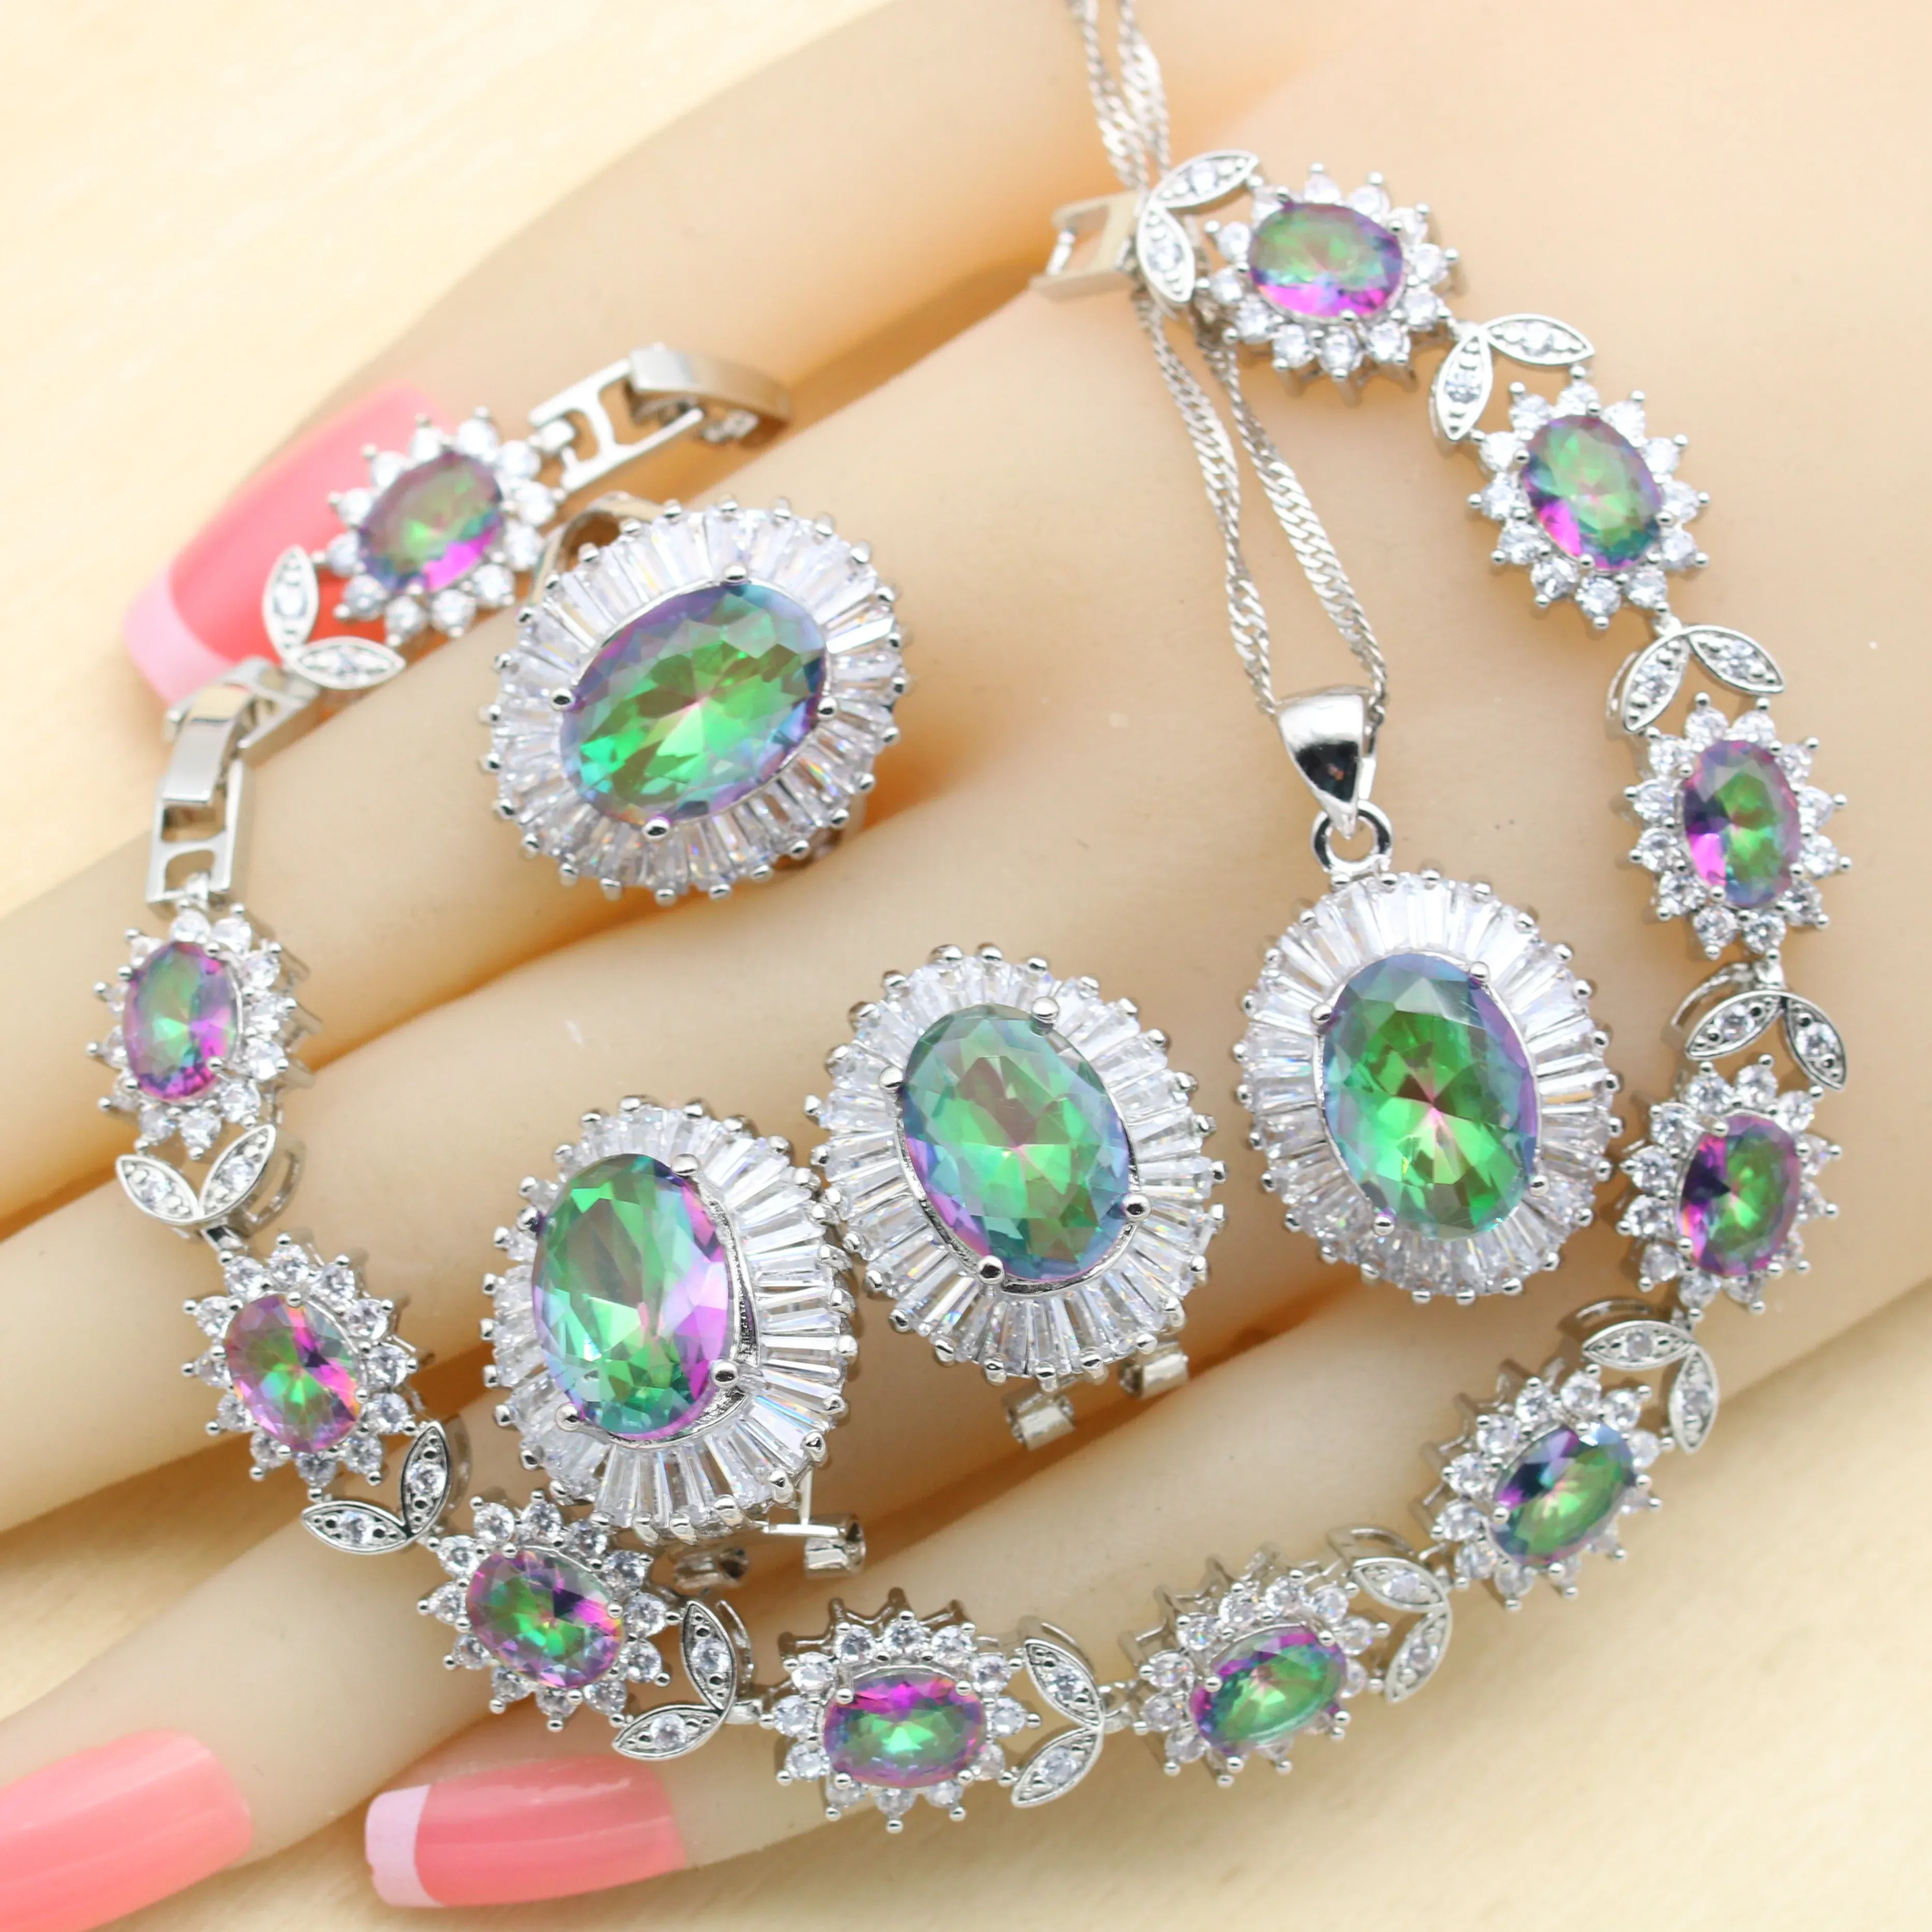 Halsbandsilver 925 Brudsmyckesuppsättningar för kvinnor Multicolor Rainbow Crystal Necklace Pendant Armband örhängen Ringar gratis presentförpackning